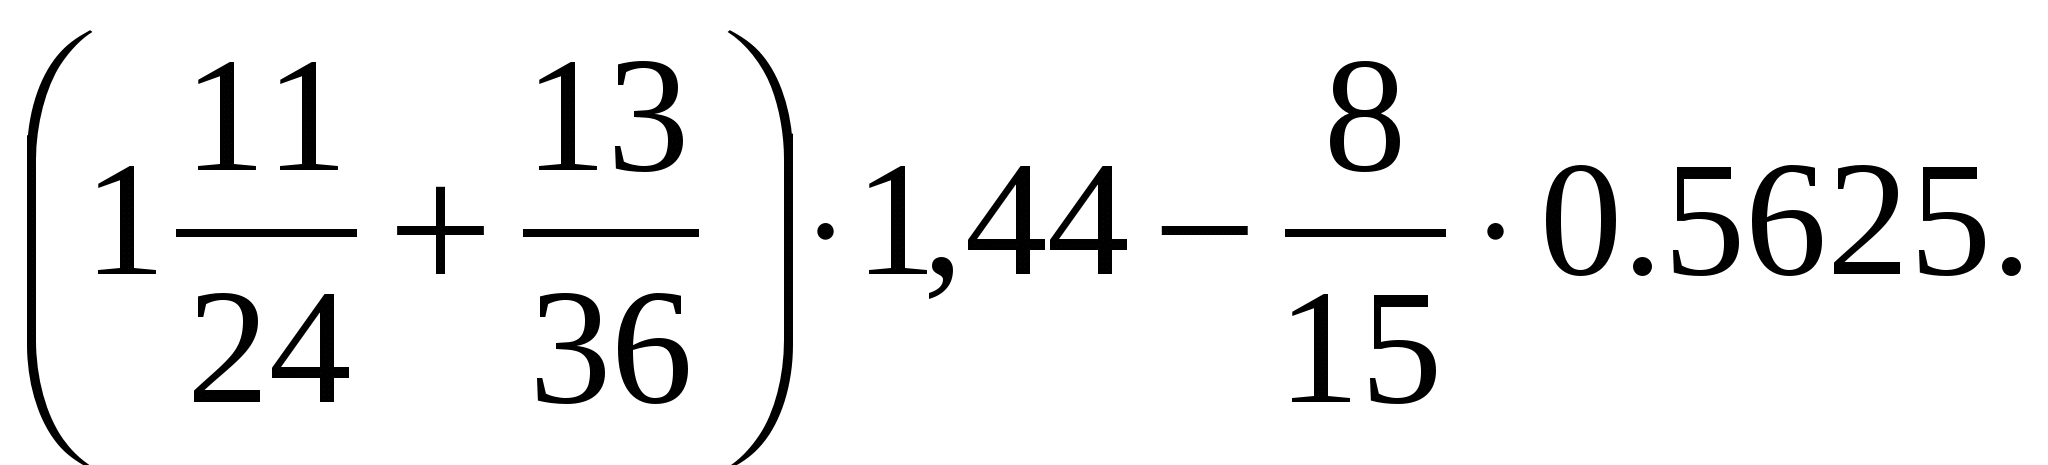 17 24 11 36